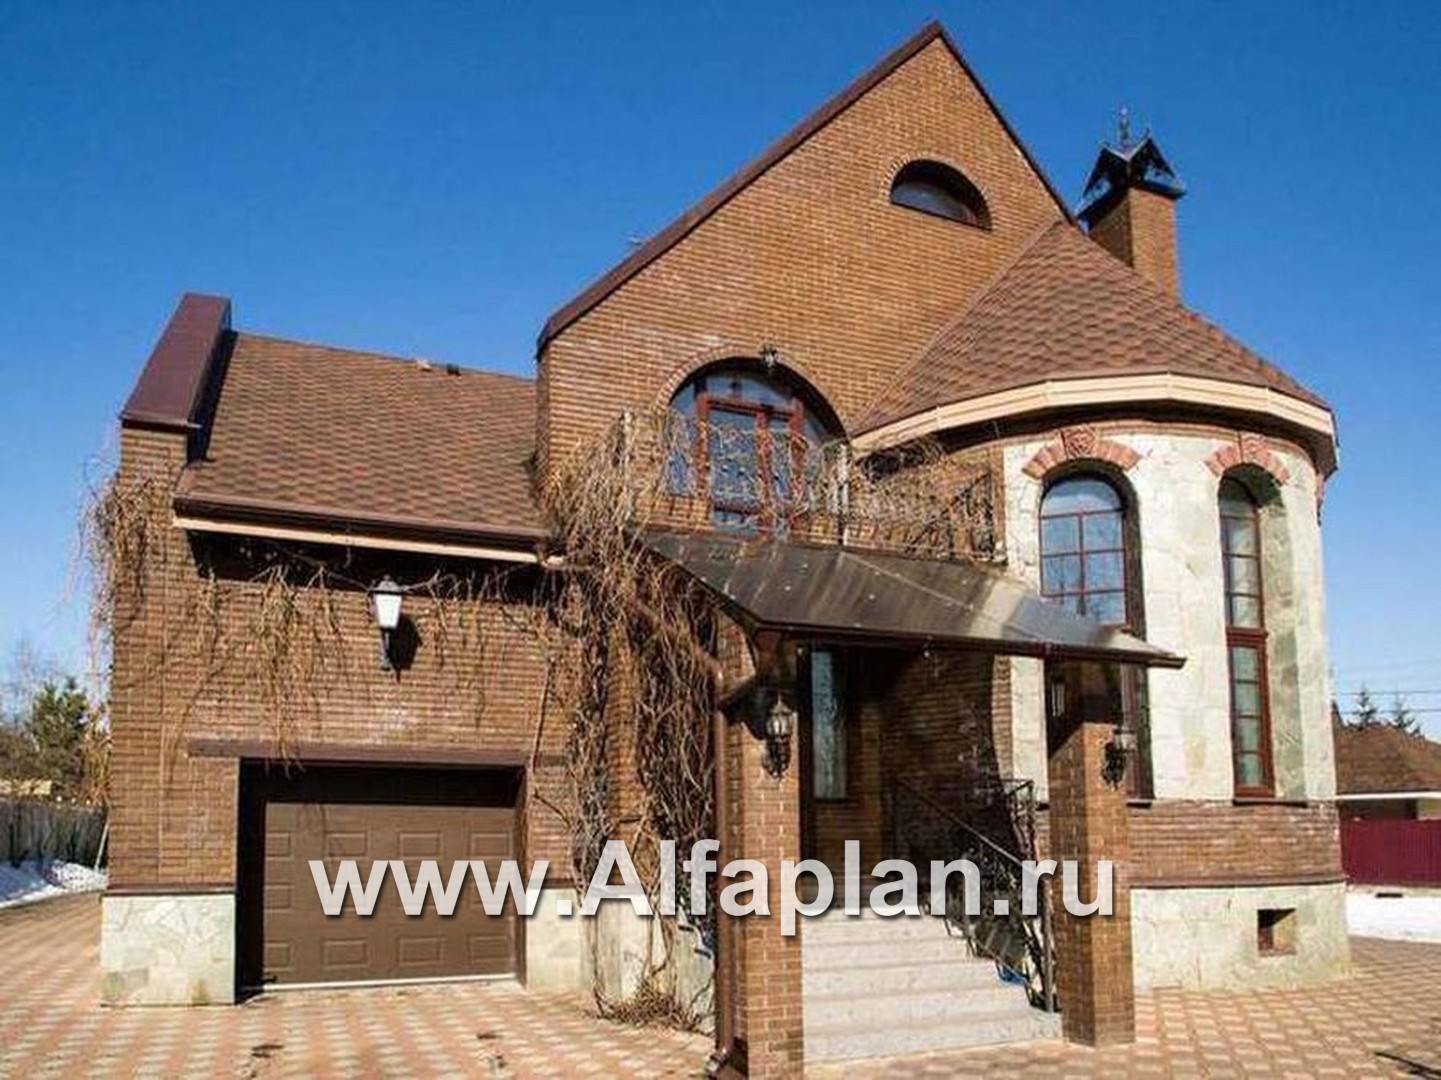 Проекты домов Альфаплан - «Онегин» - представительный загородный дом в стиле замка - дополнительное изображение №5